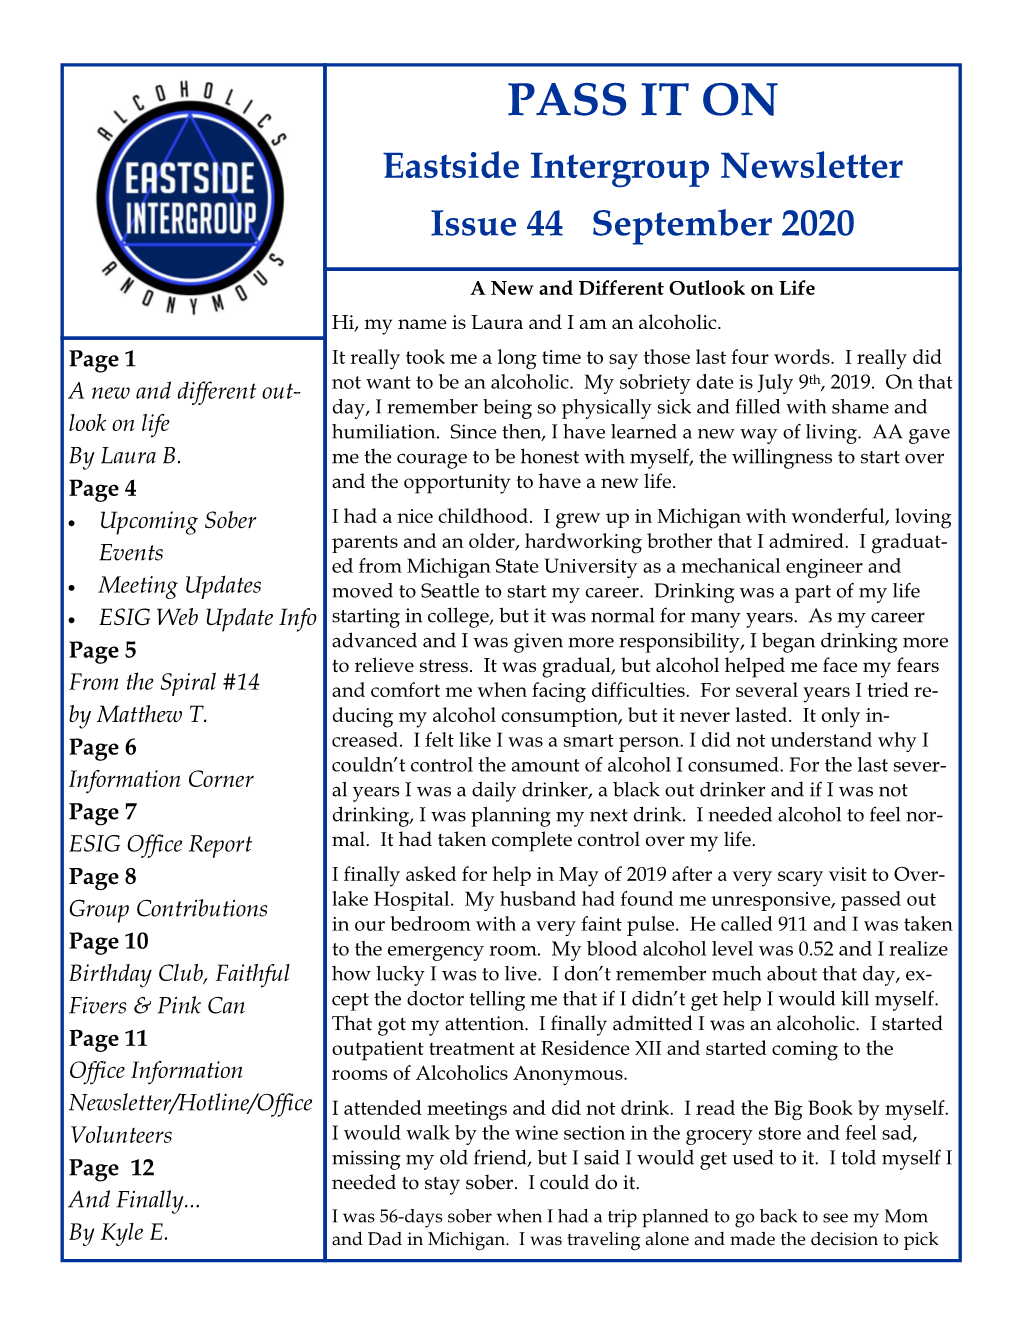 PASS IT on Eastside Intergroup Newsletter Issue 44 September 2020